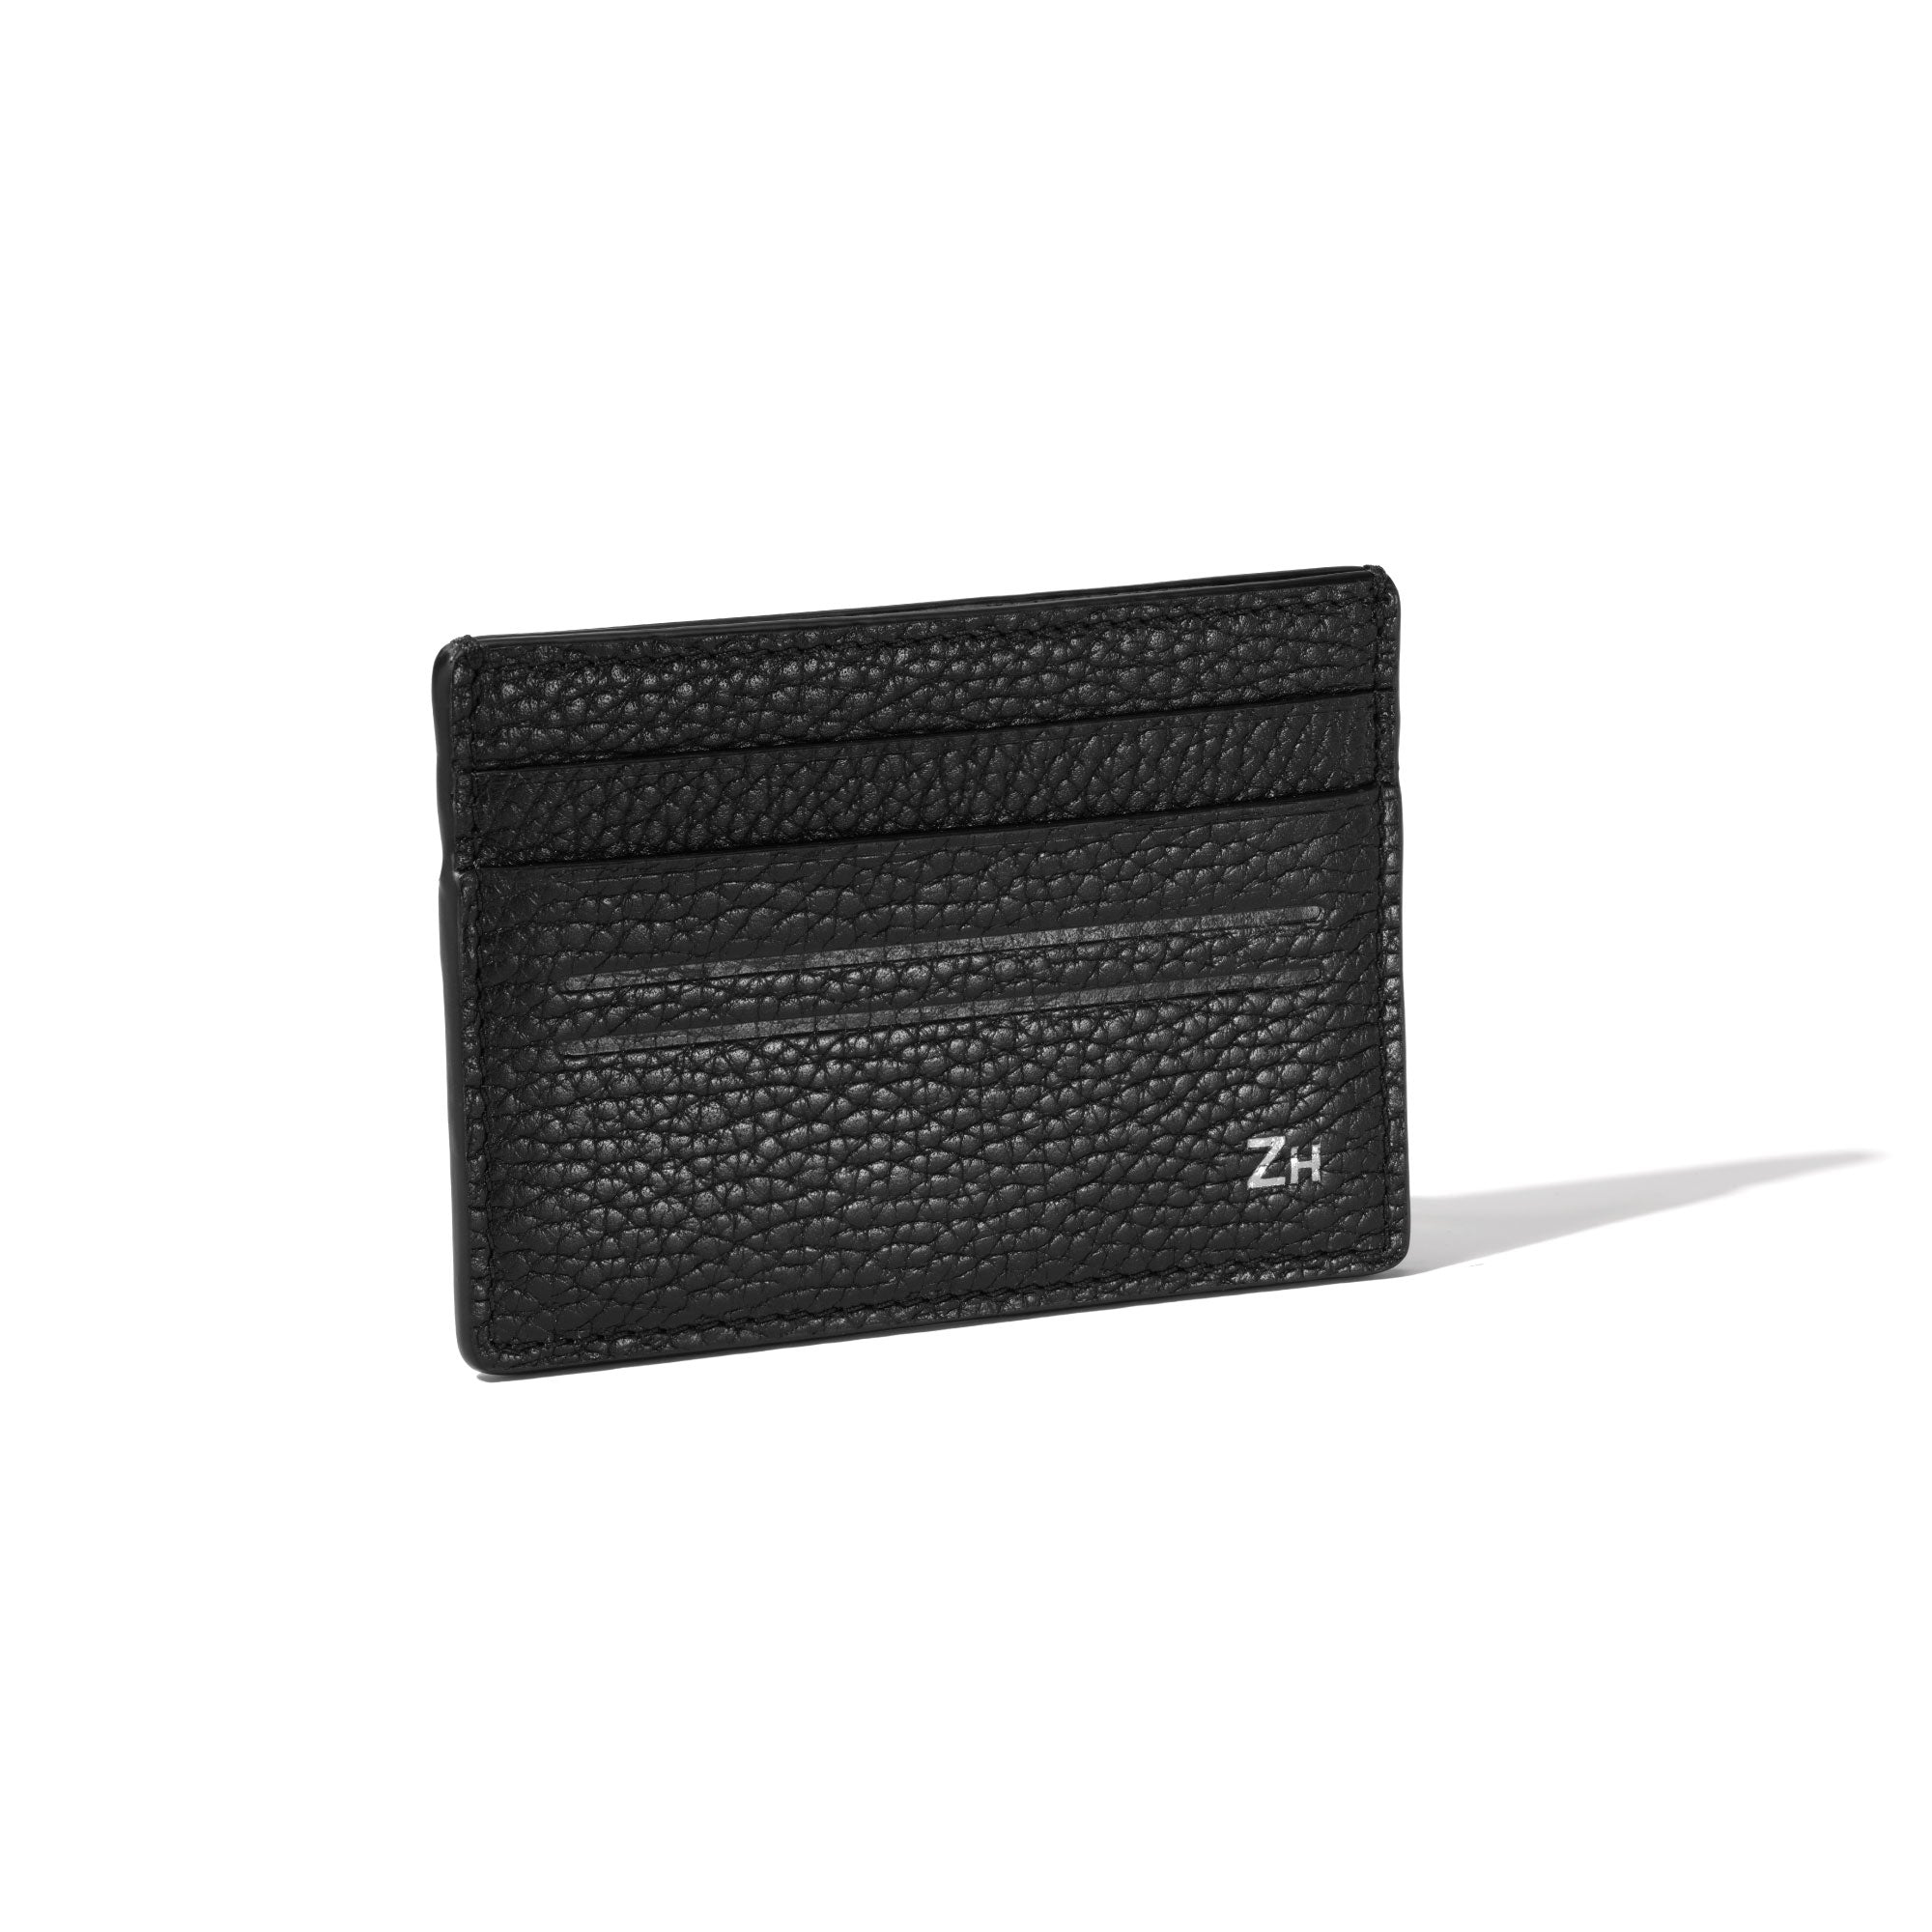 SLG/Small Leather Good/SLG Long Wallet– ZERO HALLIBURTON